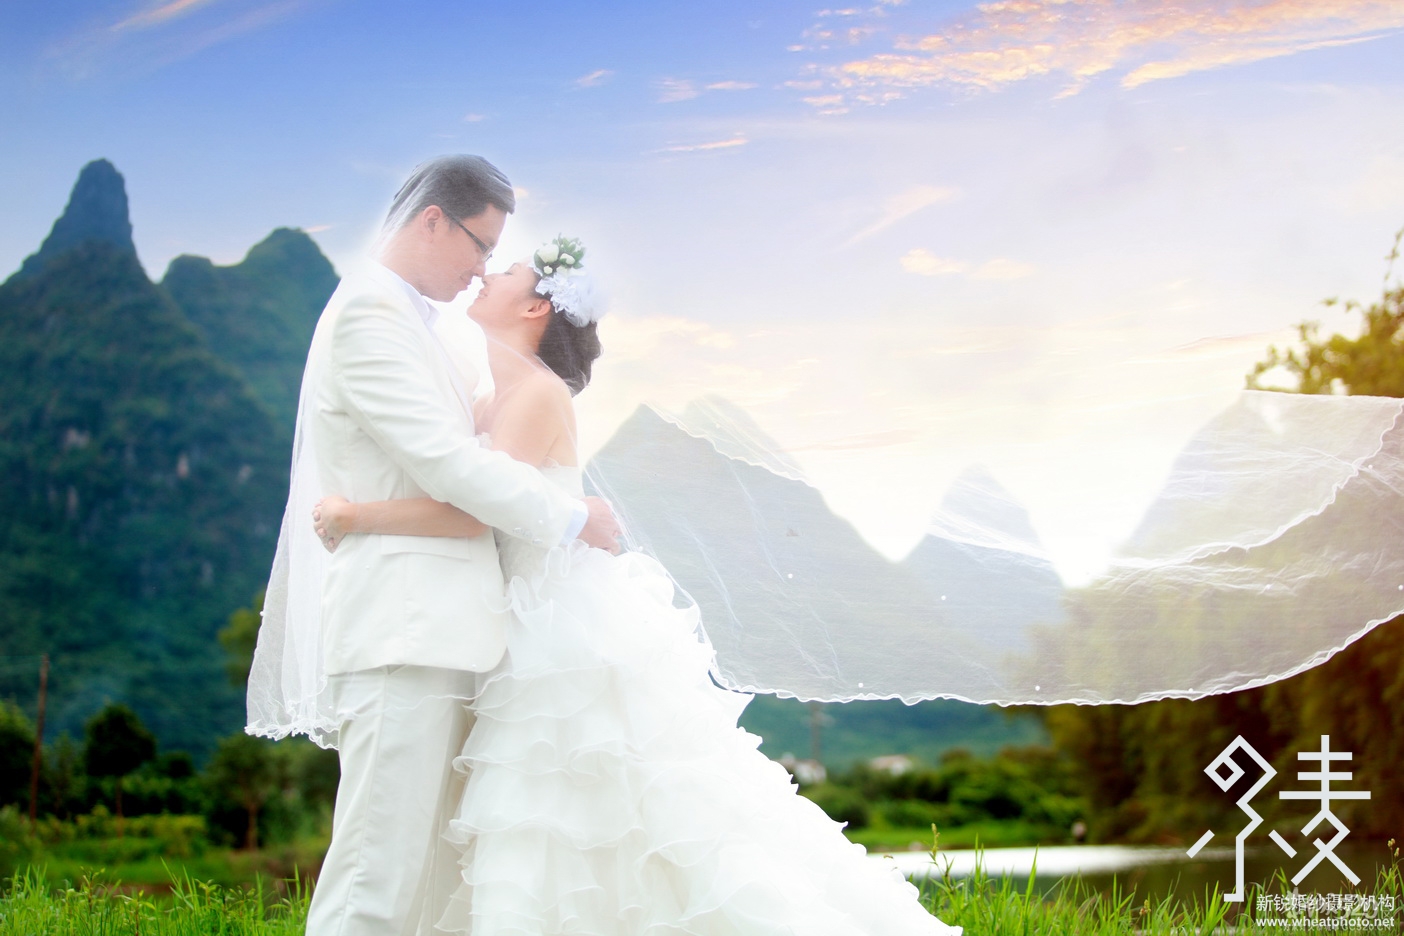 桂林小麦婚纱摄影微信自助导航全新上线141 / 作者:桂林小麦摄影 / 帖子ID:64543